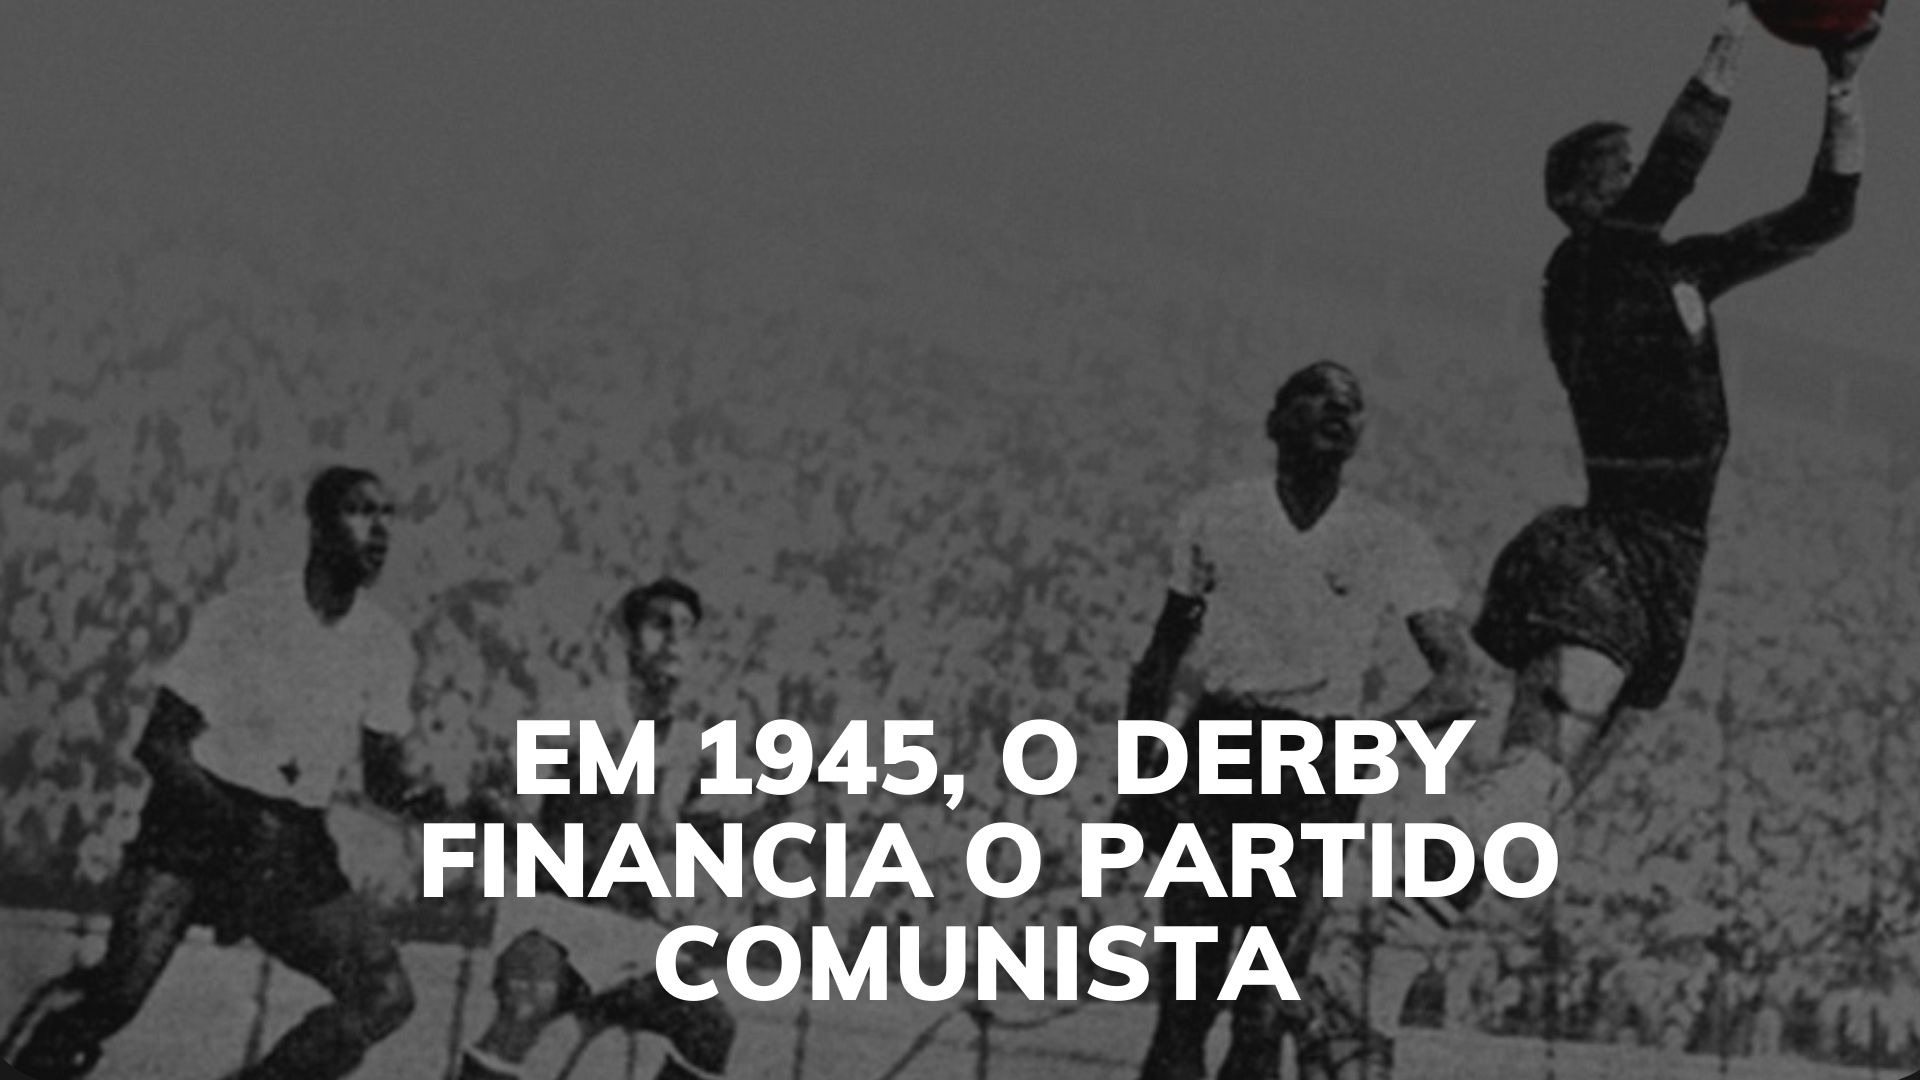  Palmeiras x Corinthians 1945: o jogo vermelho